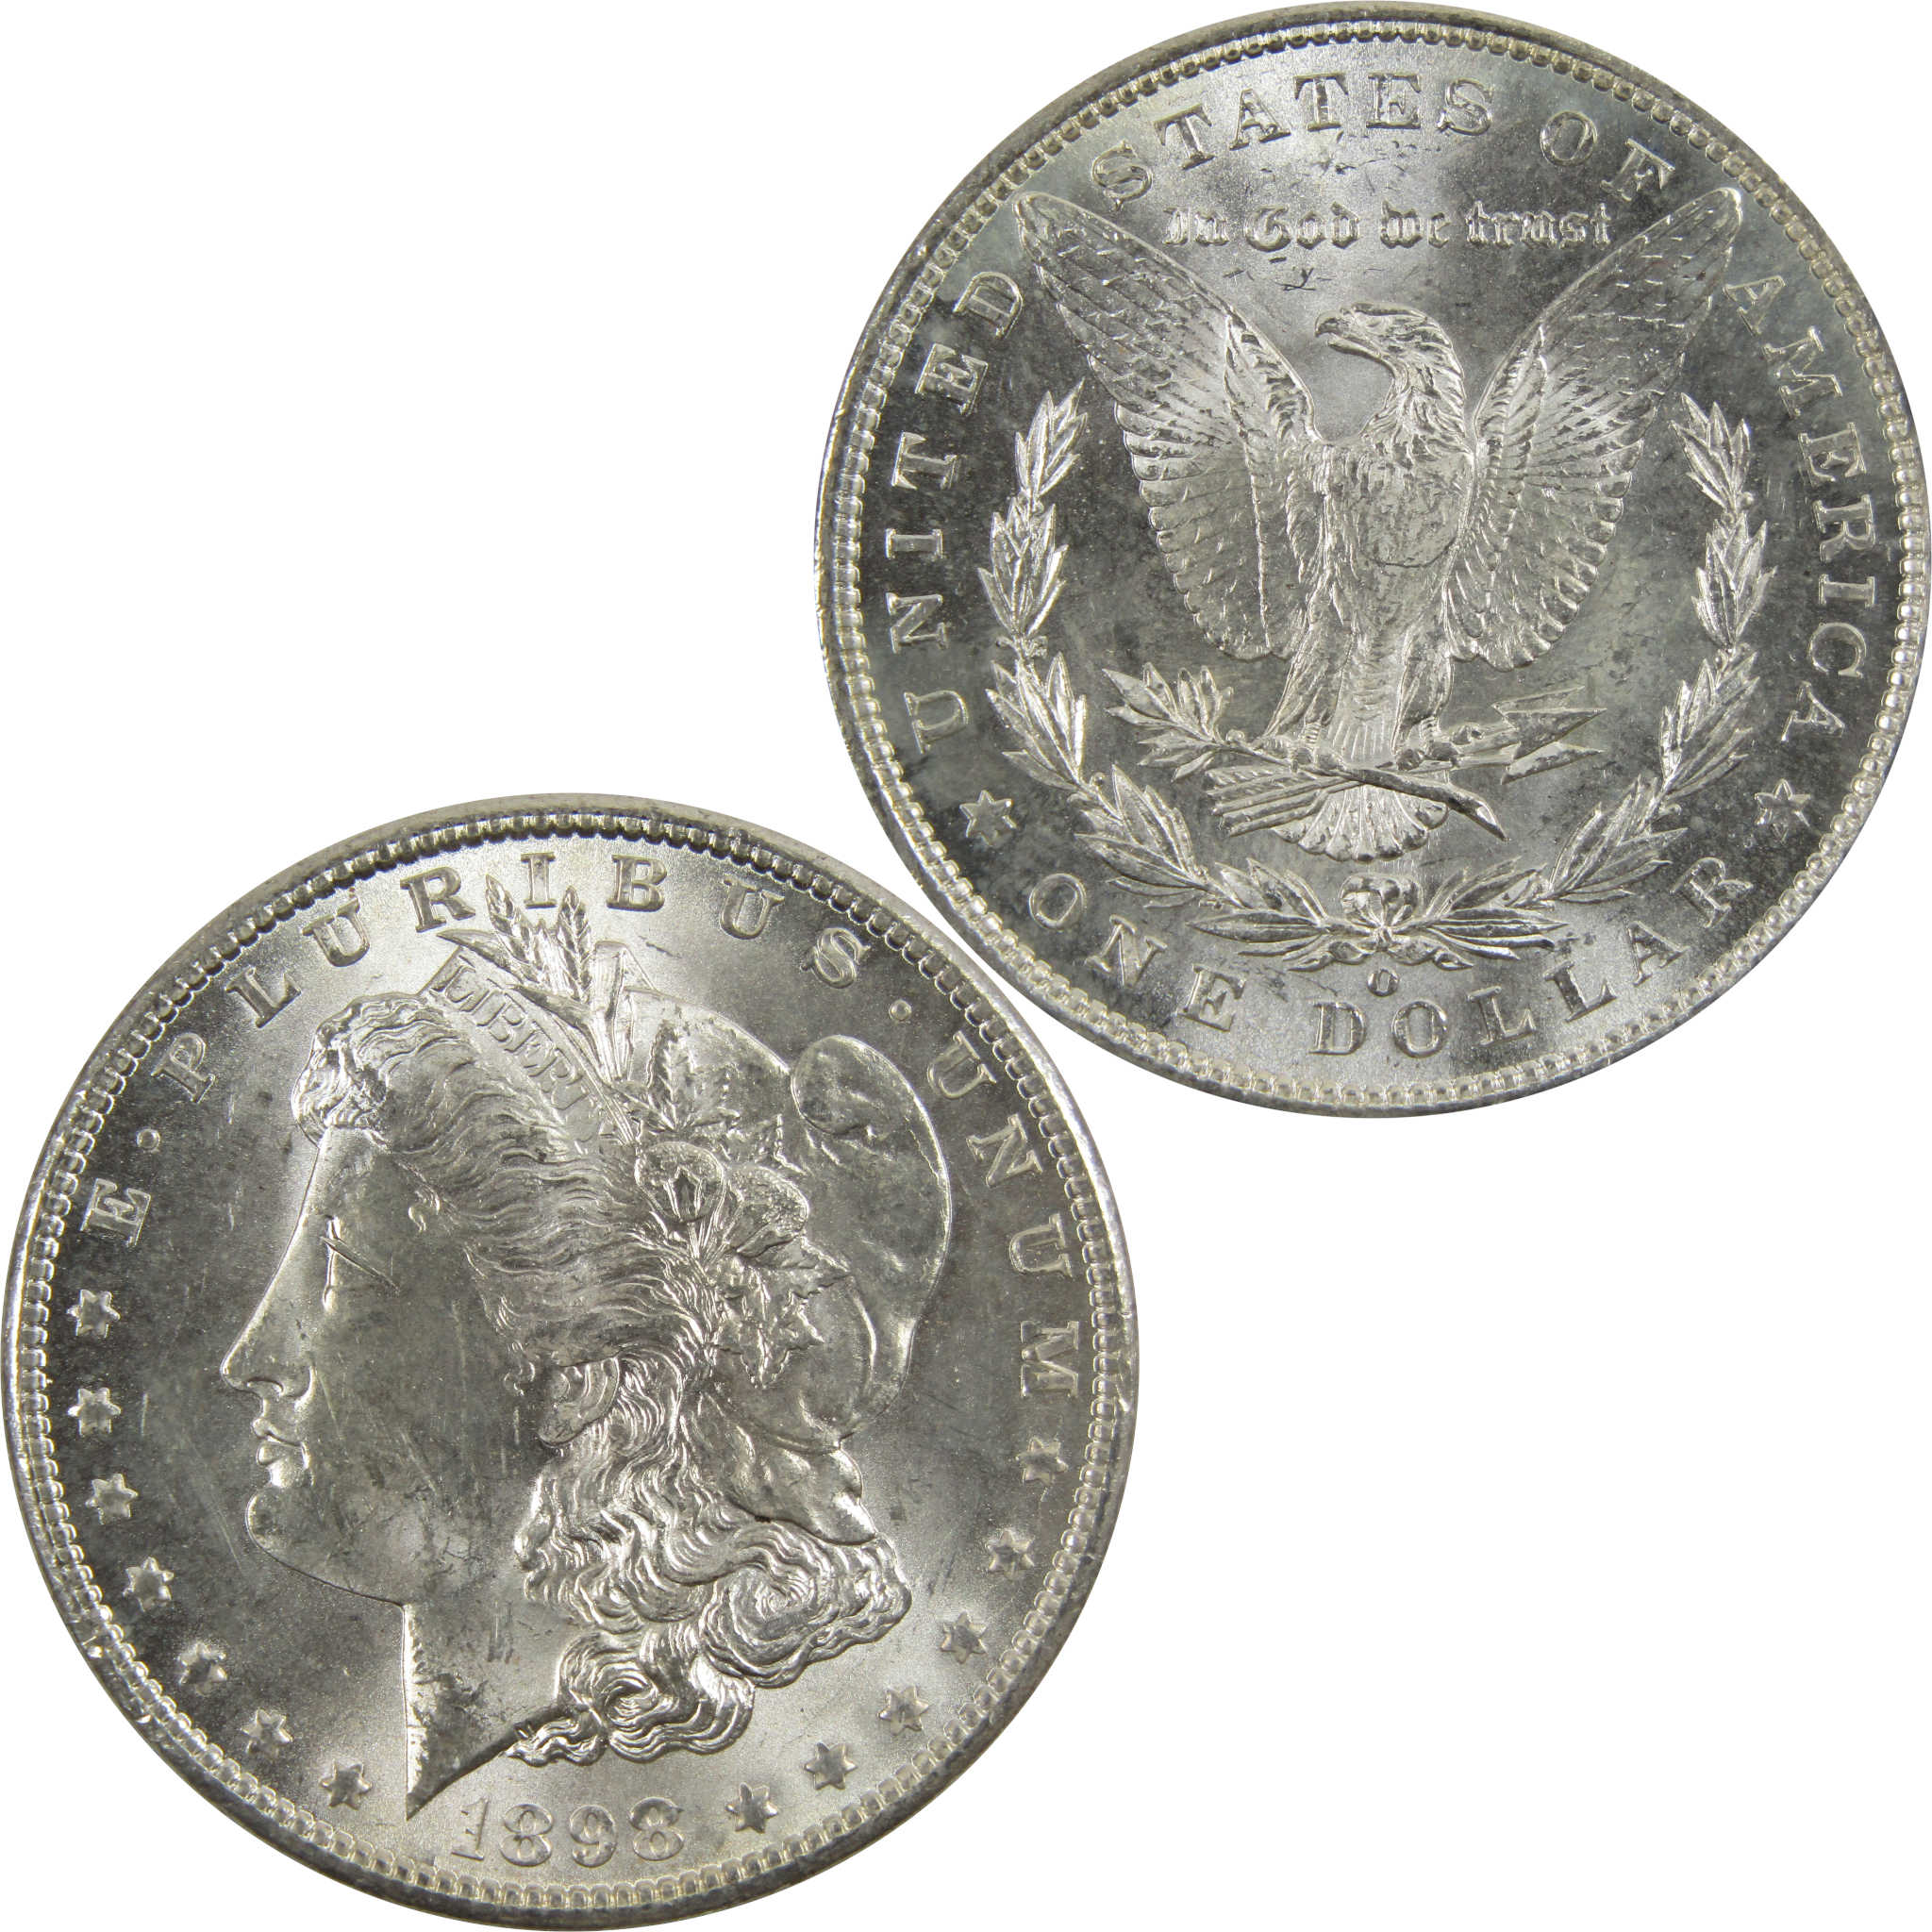 1898 O Morgan Dollar BU Uncirculated 90% Silver $1 Coin SKU:I5263 - Morgan coin - Morgan silver dollar - Morgan silver dollar for sale - Profile Coins &amp; Collectibles